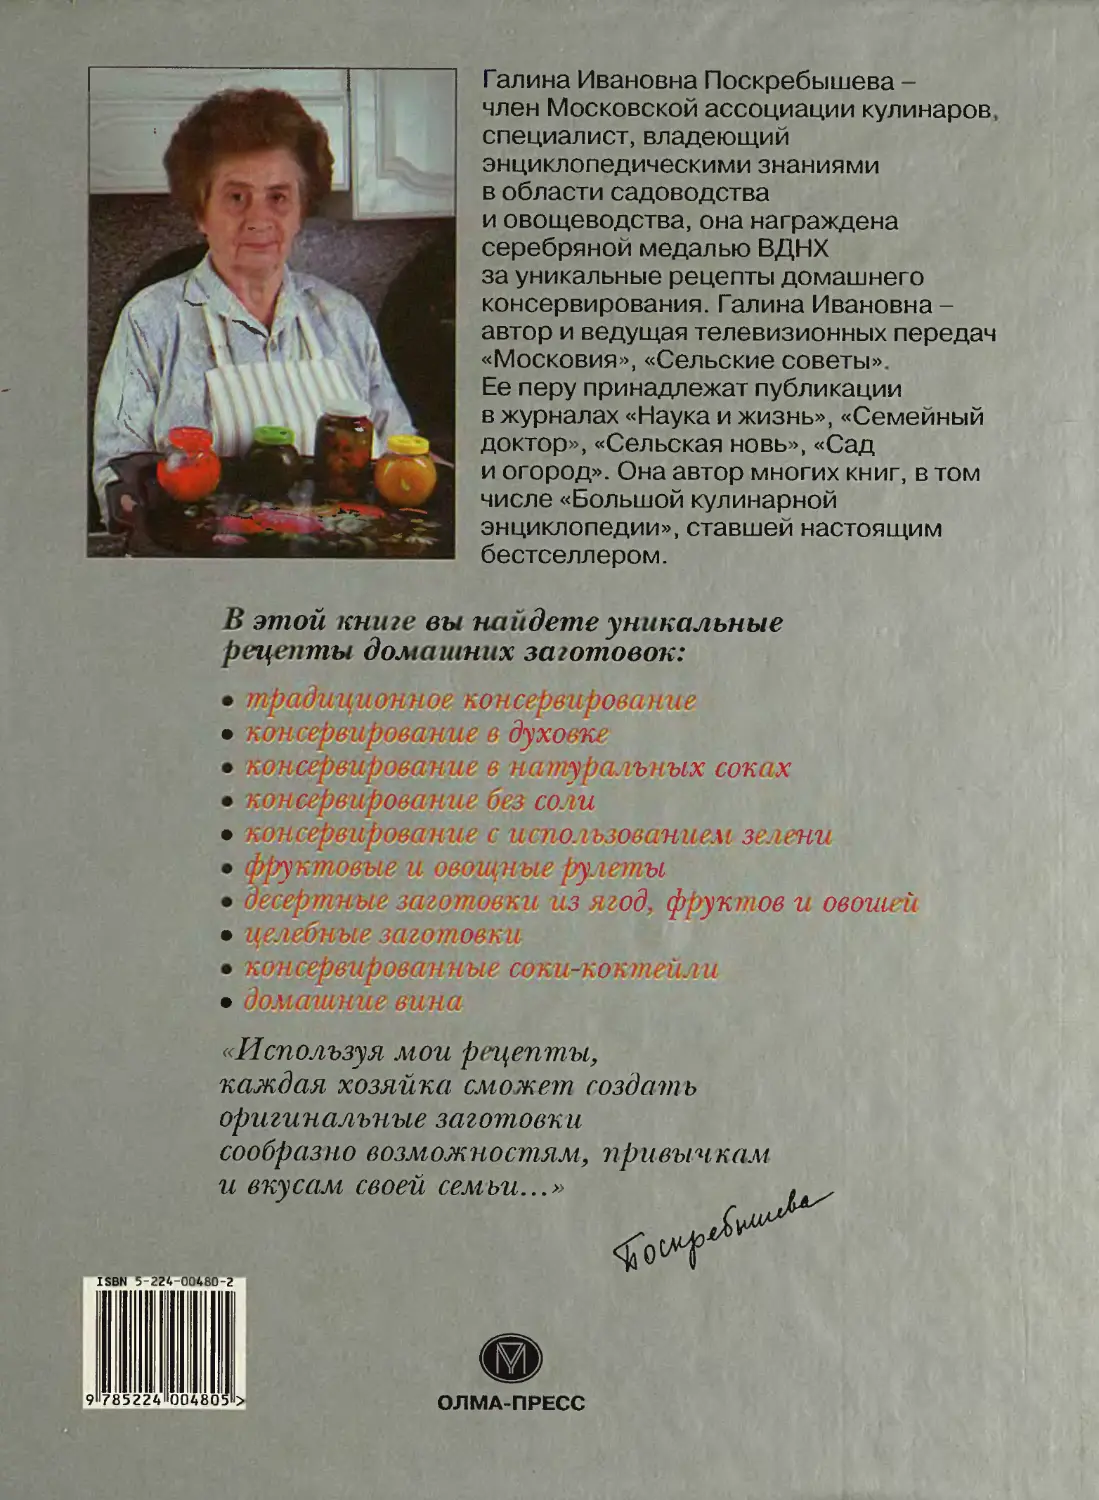 Галина Поскребышева рецепты